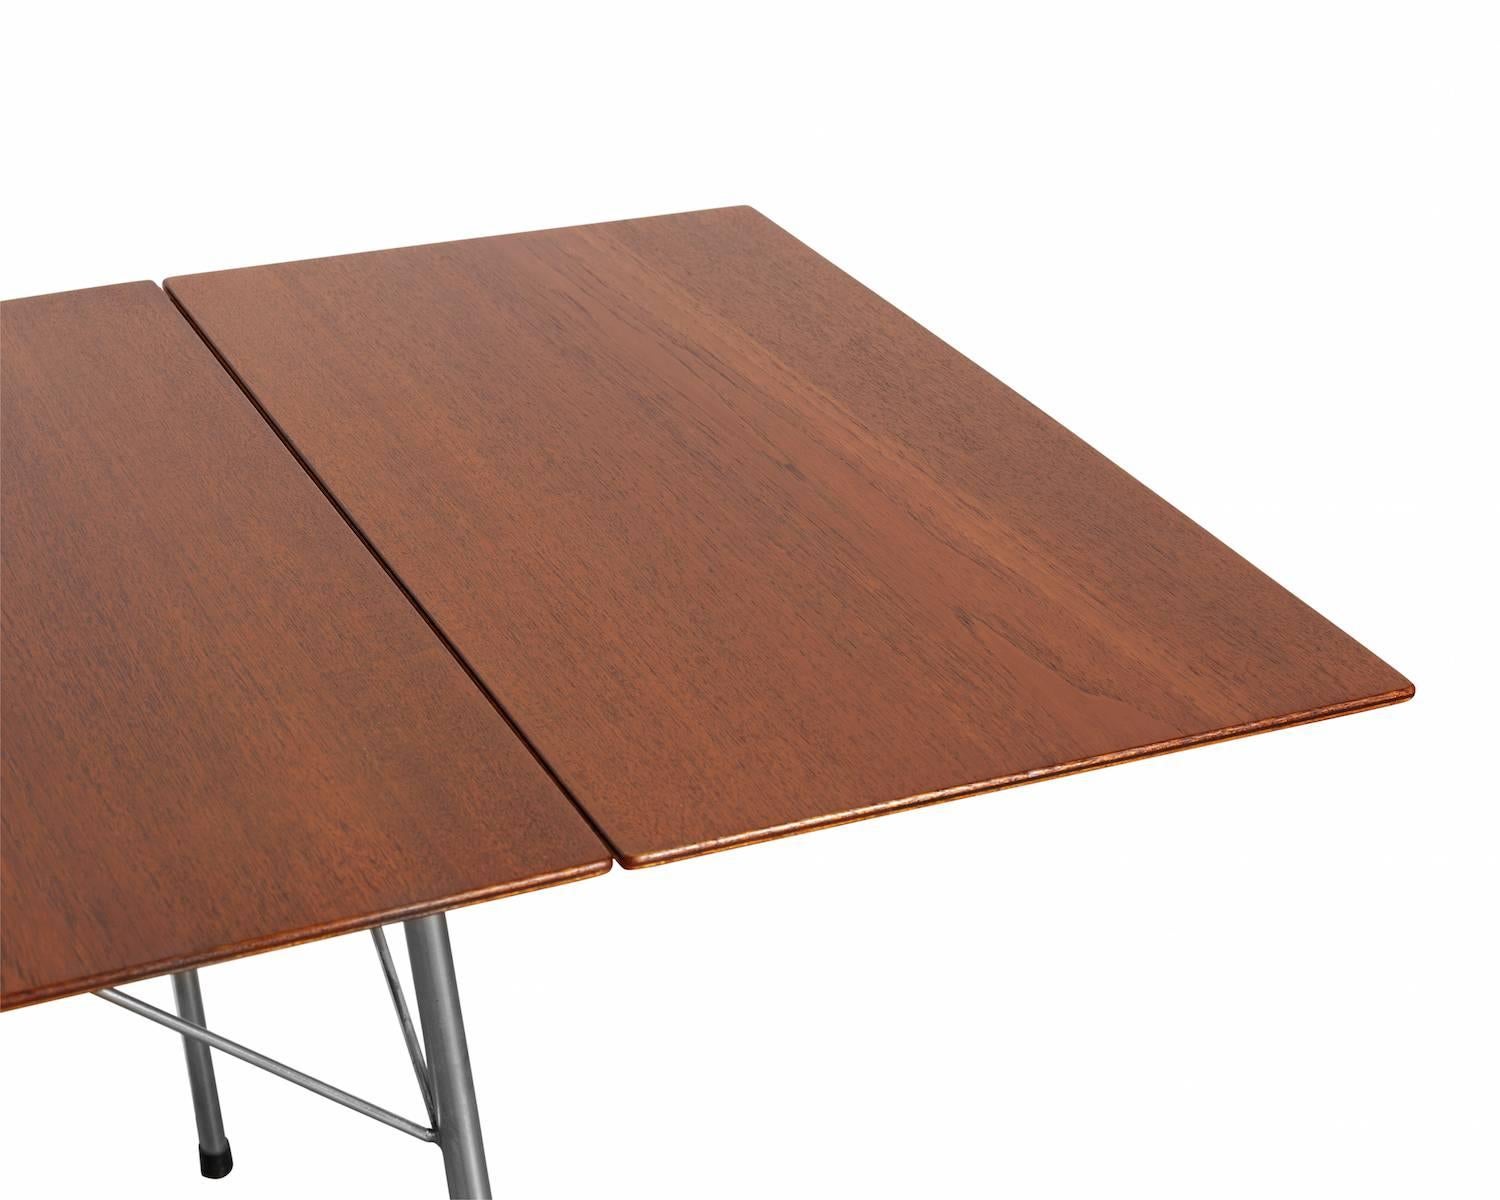 Scandinavian Modern Arne Jacobsen Drop-Leaf Table, Model 3601